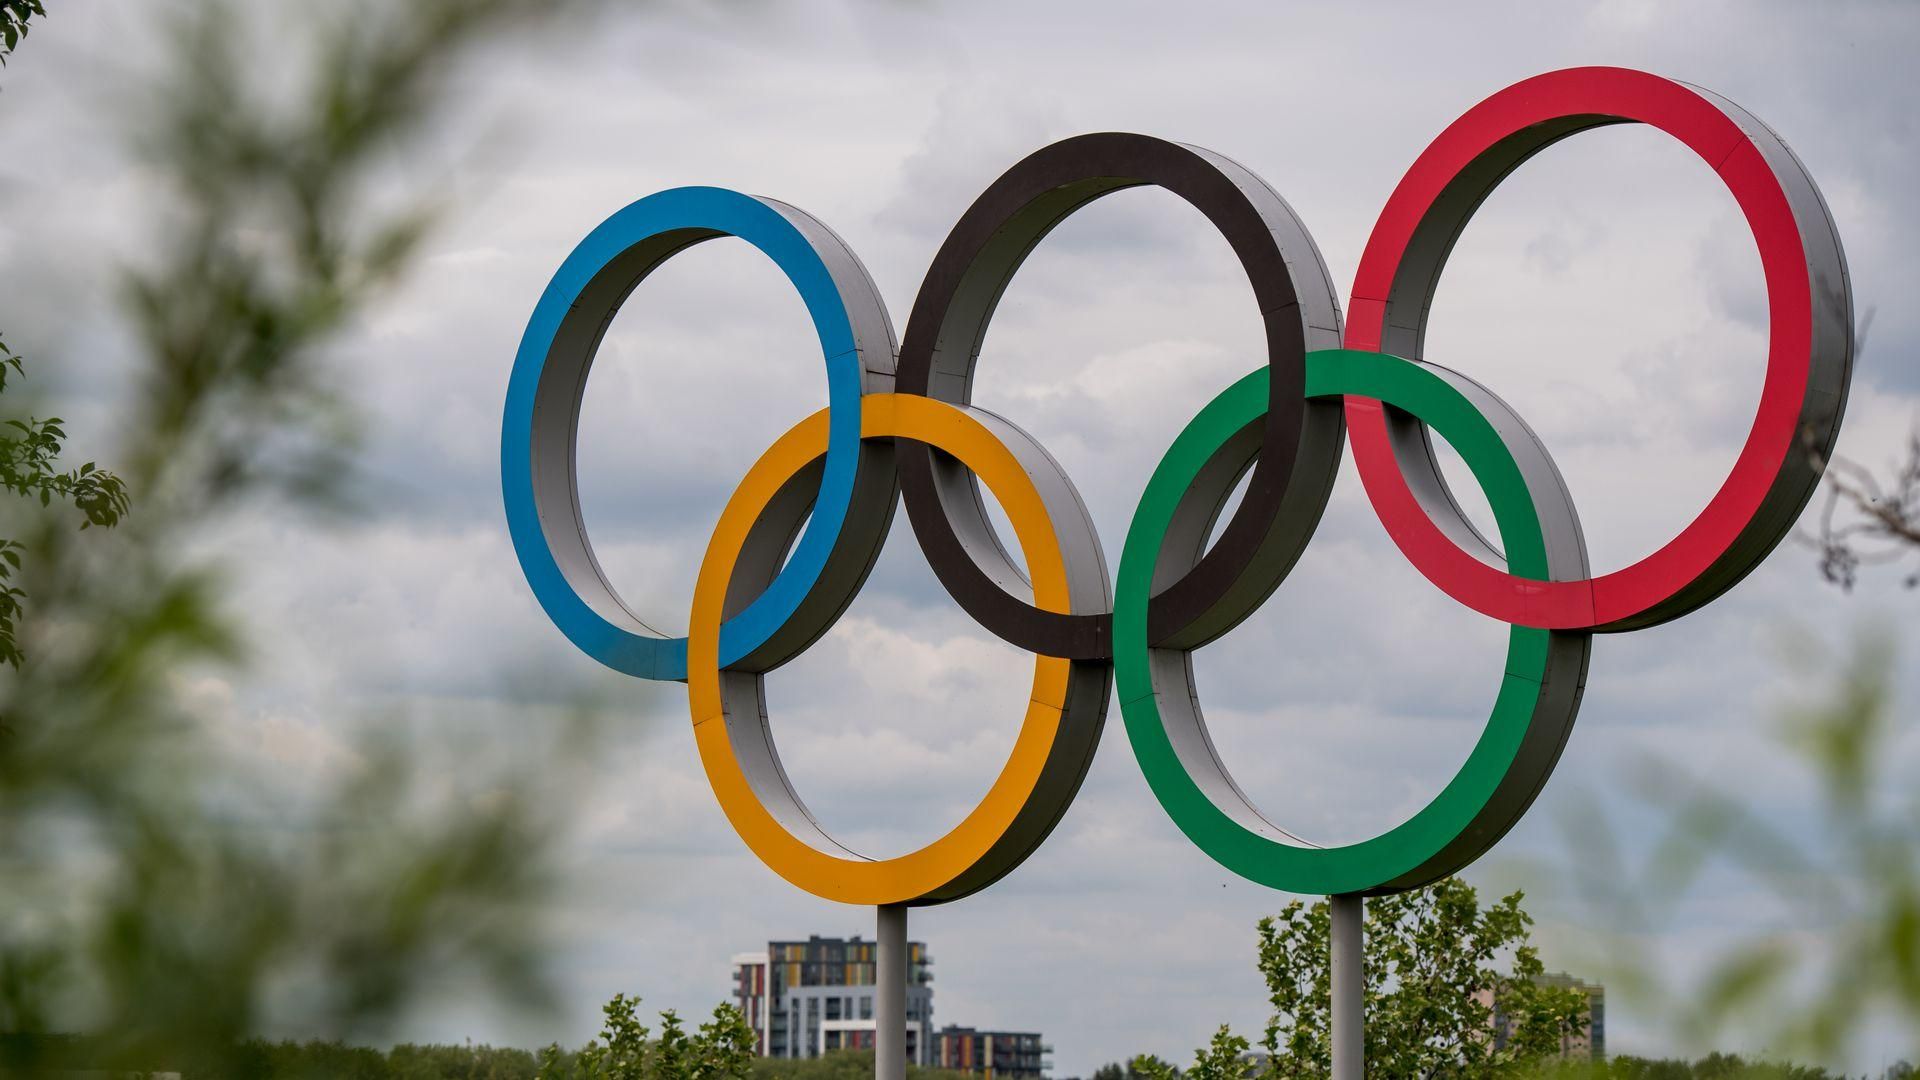 Олимпиада нужна любому государству, но есть вопрос цены и эффективности, – Олег Немчинов